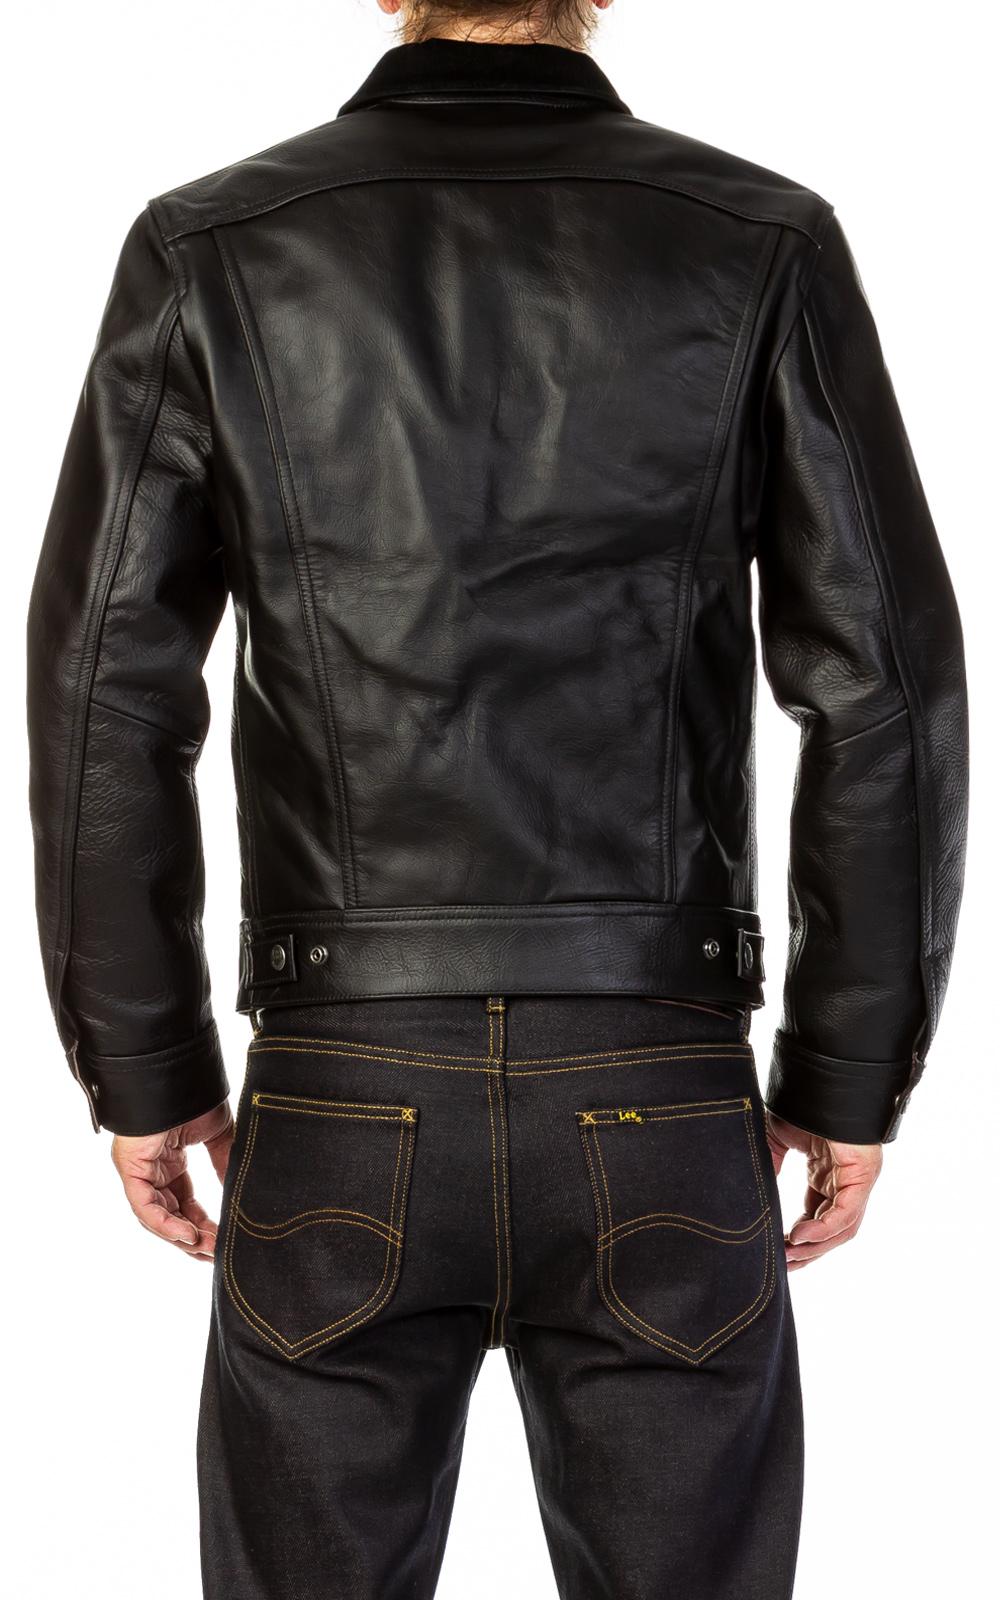 Lee 101 Leather Jacket | tunersread.com